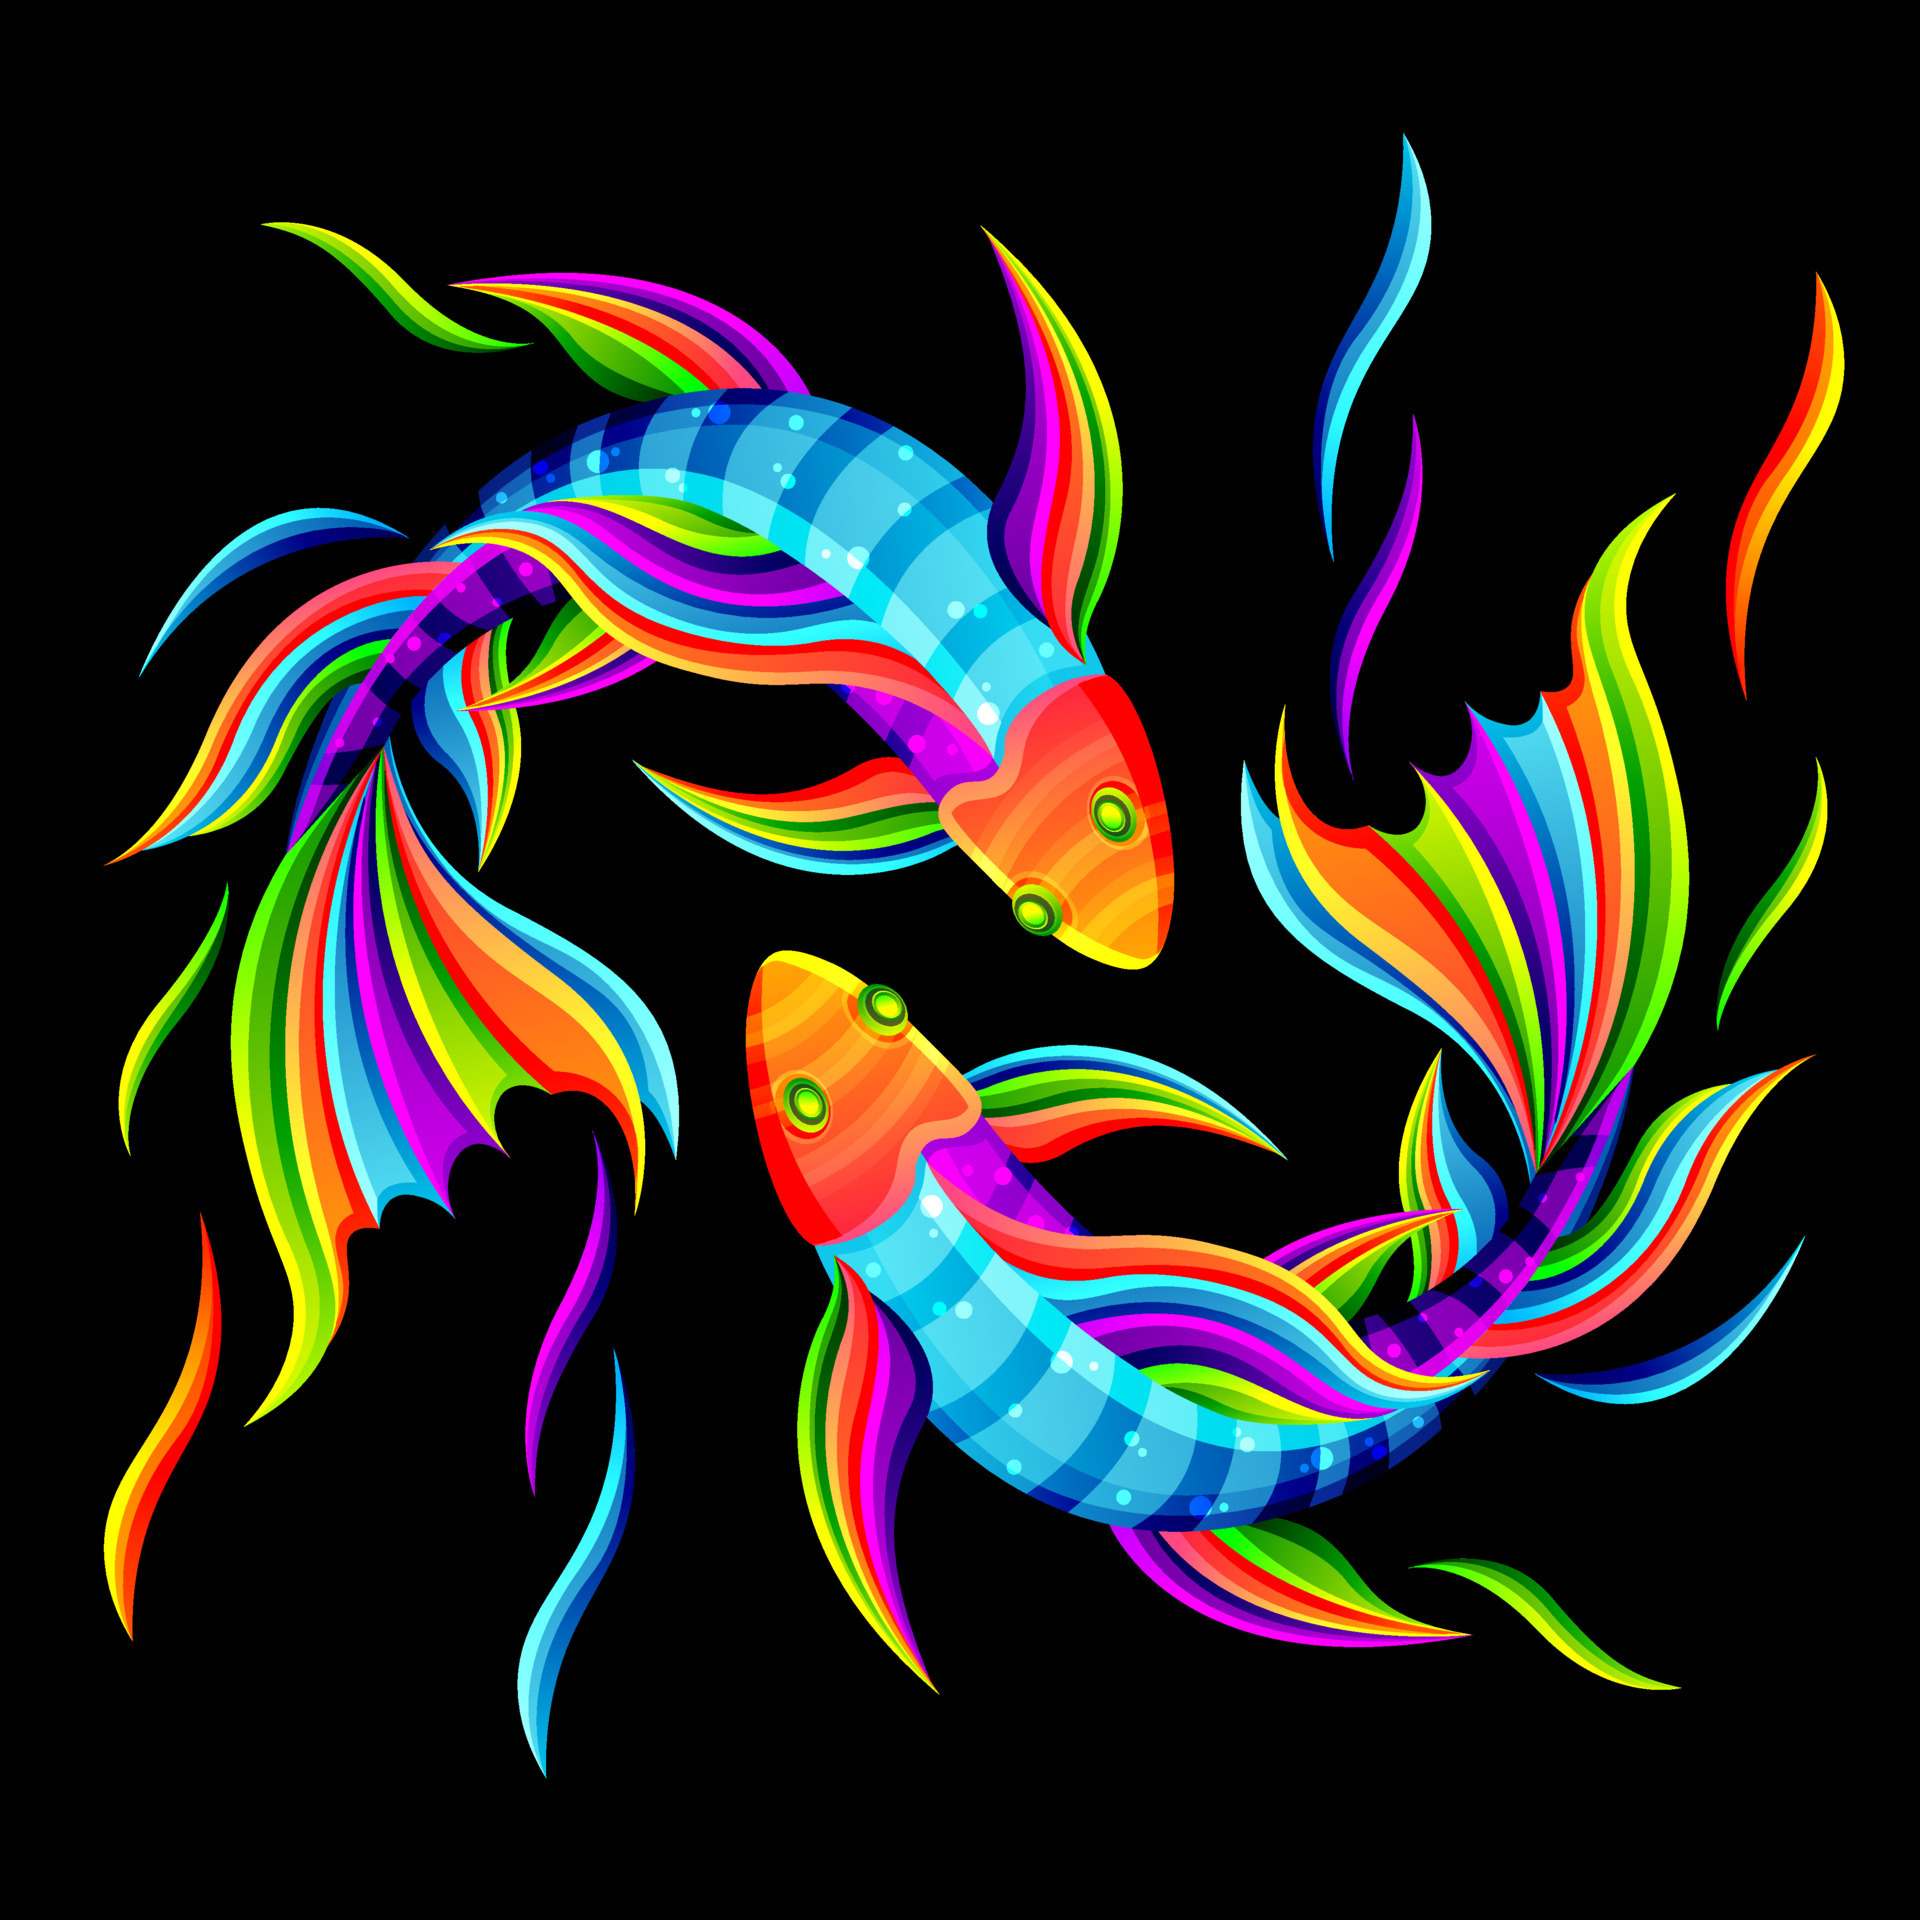 un par de peces nadando juntos, simbolizando el yin y el yang o el zodíaco de piscis. ilustraciones de personajes con dibujos coloridos o estilo wpap. para imprimir camisetas, tatuajes, mascotas, logotipos,